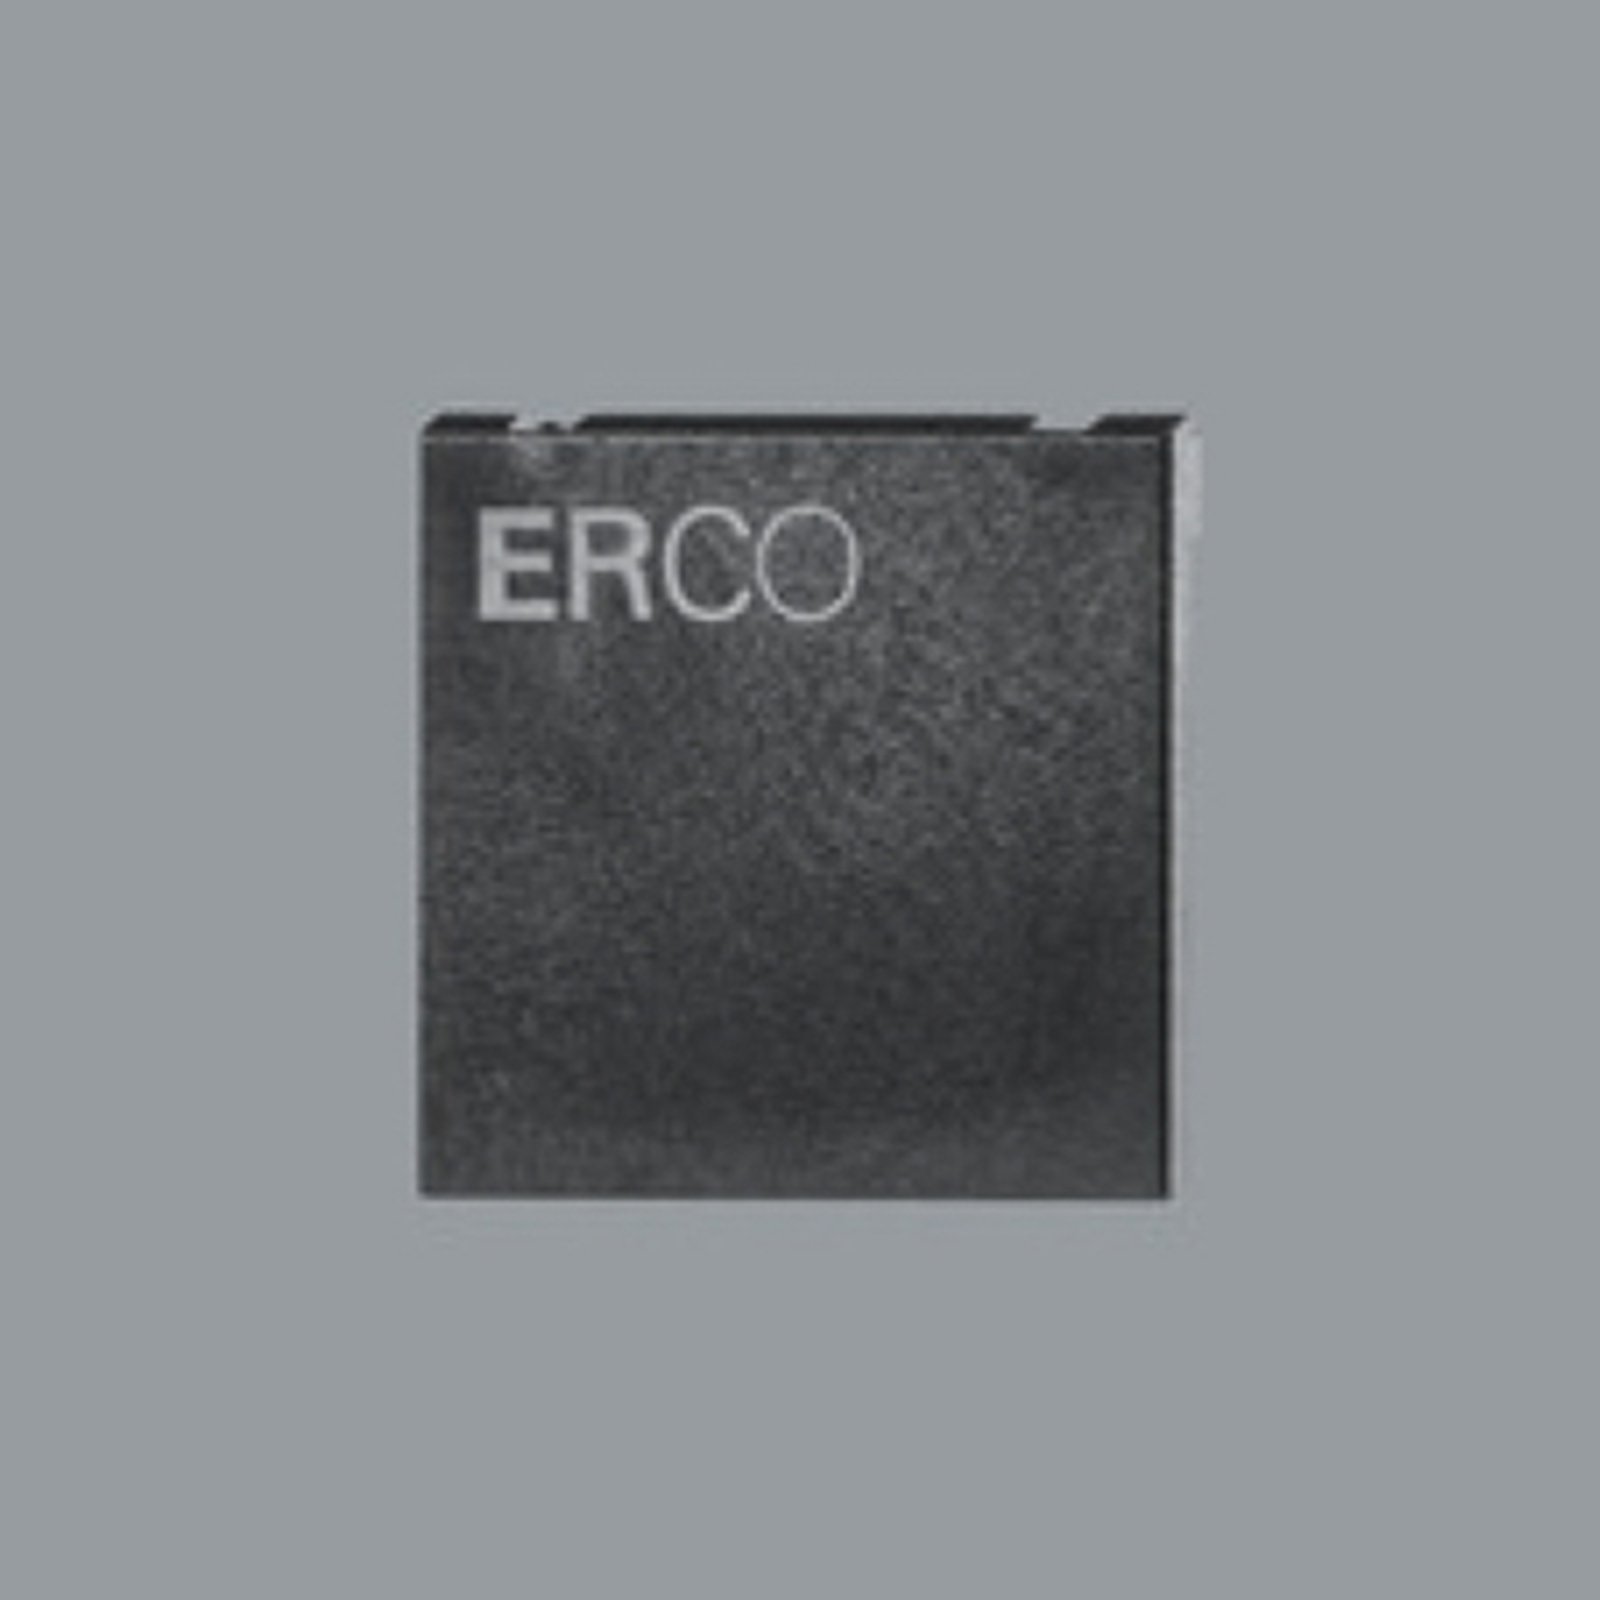 ERCO sluttplate for 3-fase skinne, svart